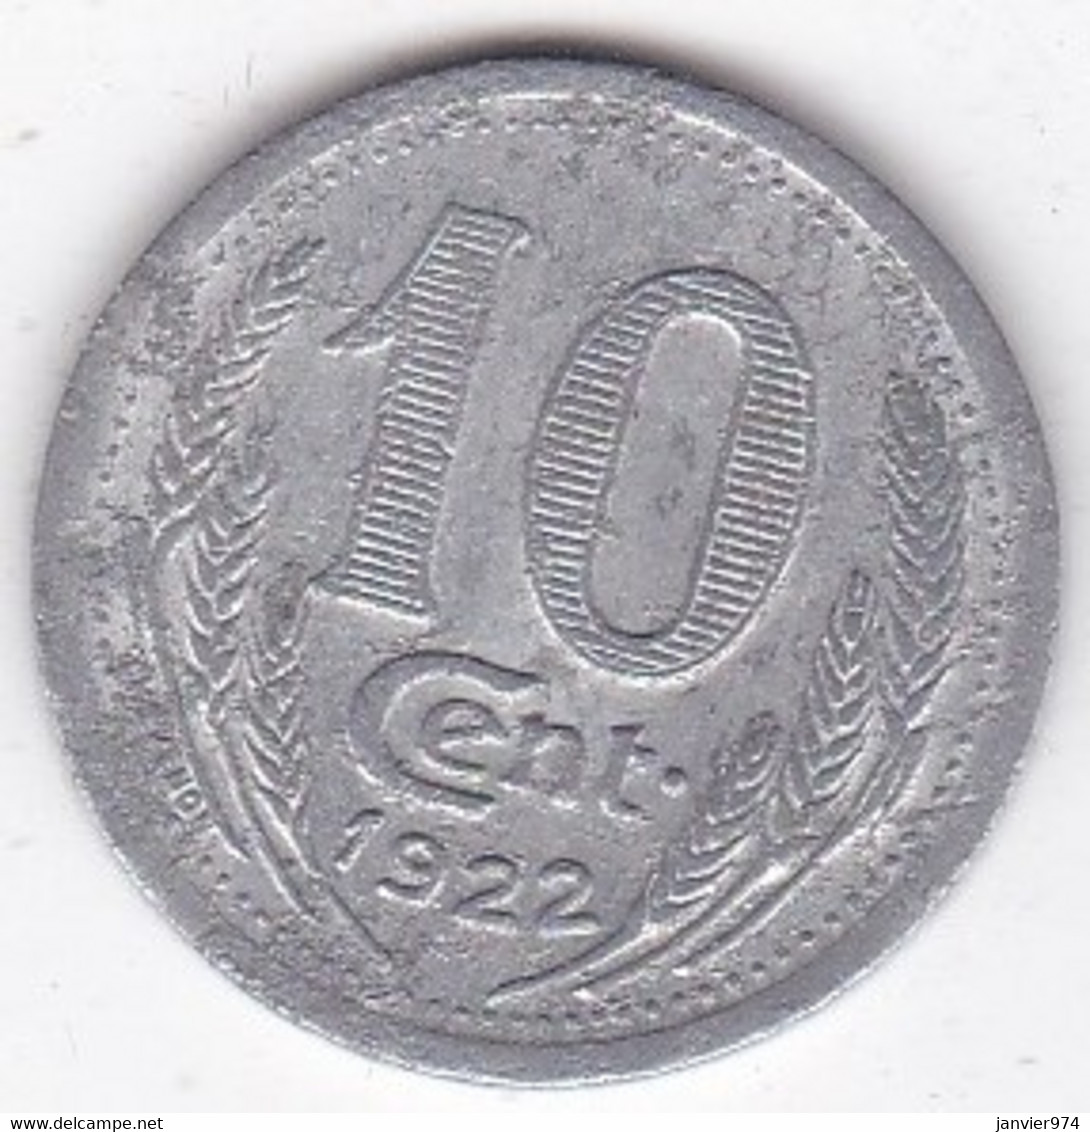 28. Eure Et Loire. Chambre De Commerce. 10 Centimes 1922, En Aluminium - Monétaires / De Nécessité